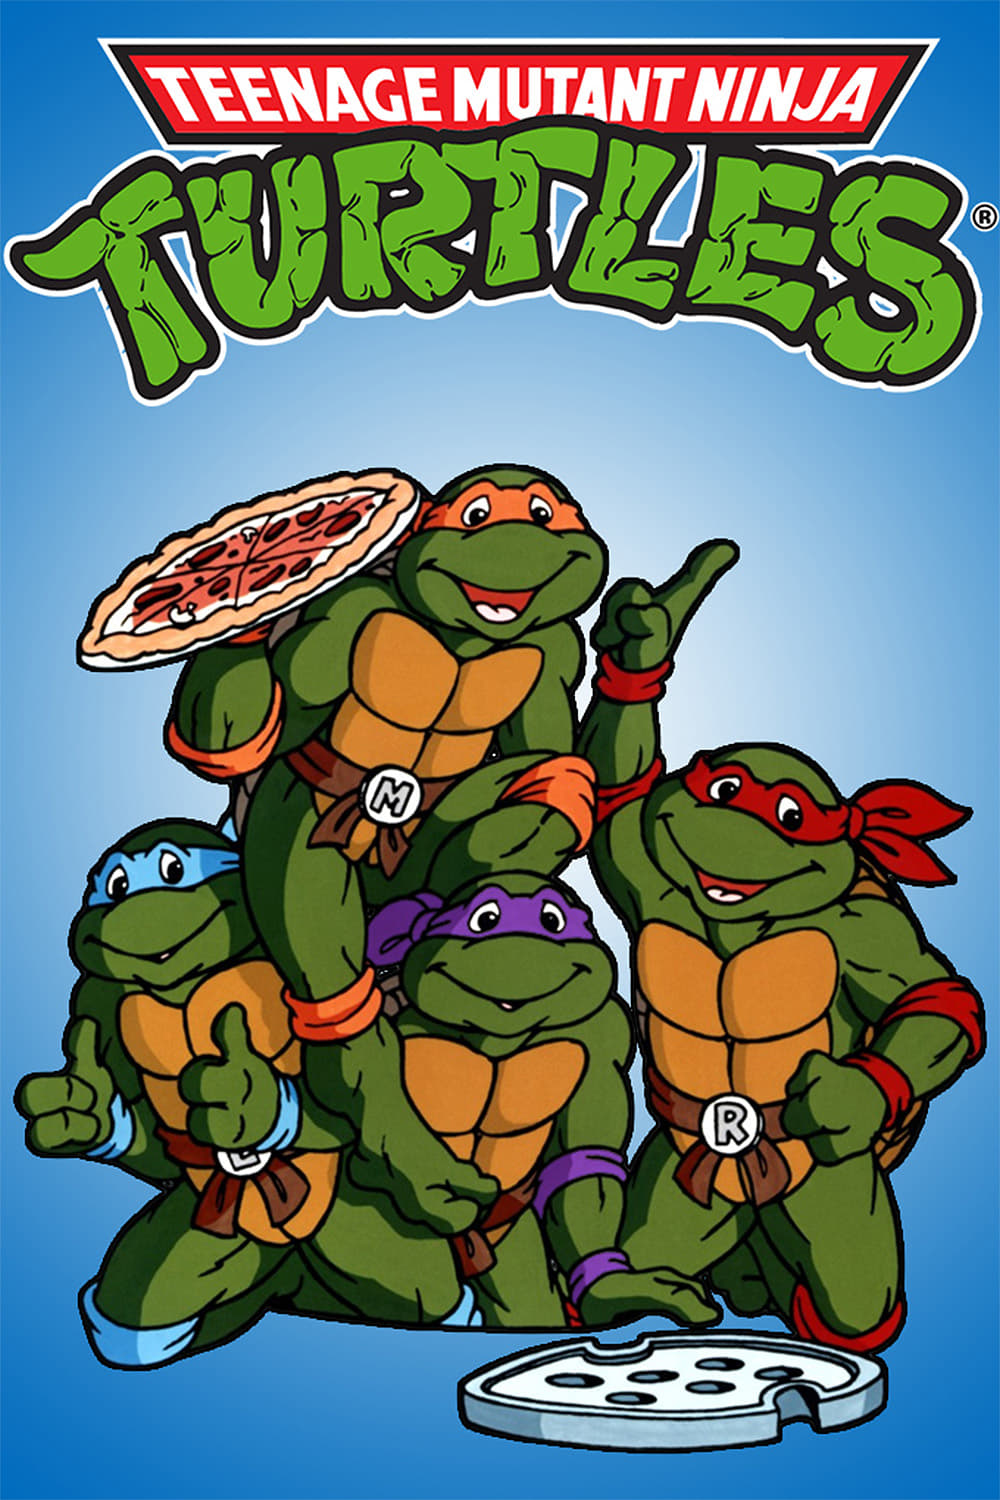 Teenage Mutant Ninja Turtles TV Shows About Tmnt